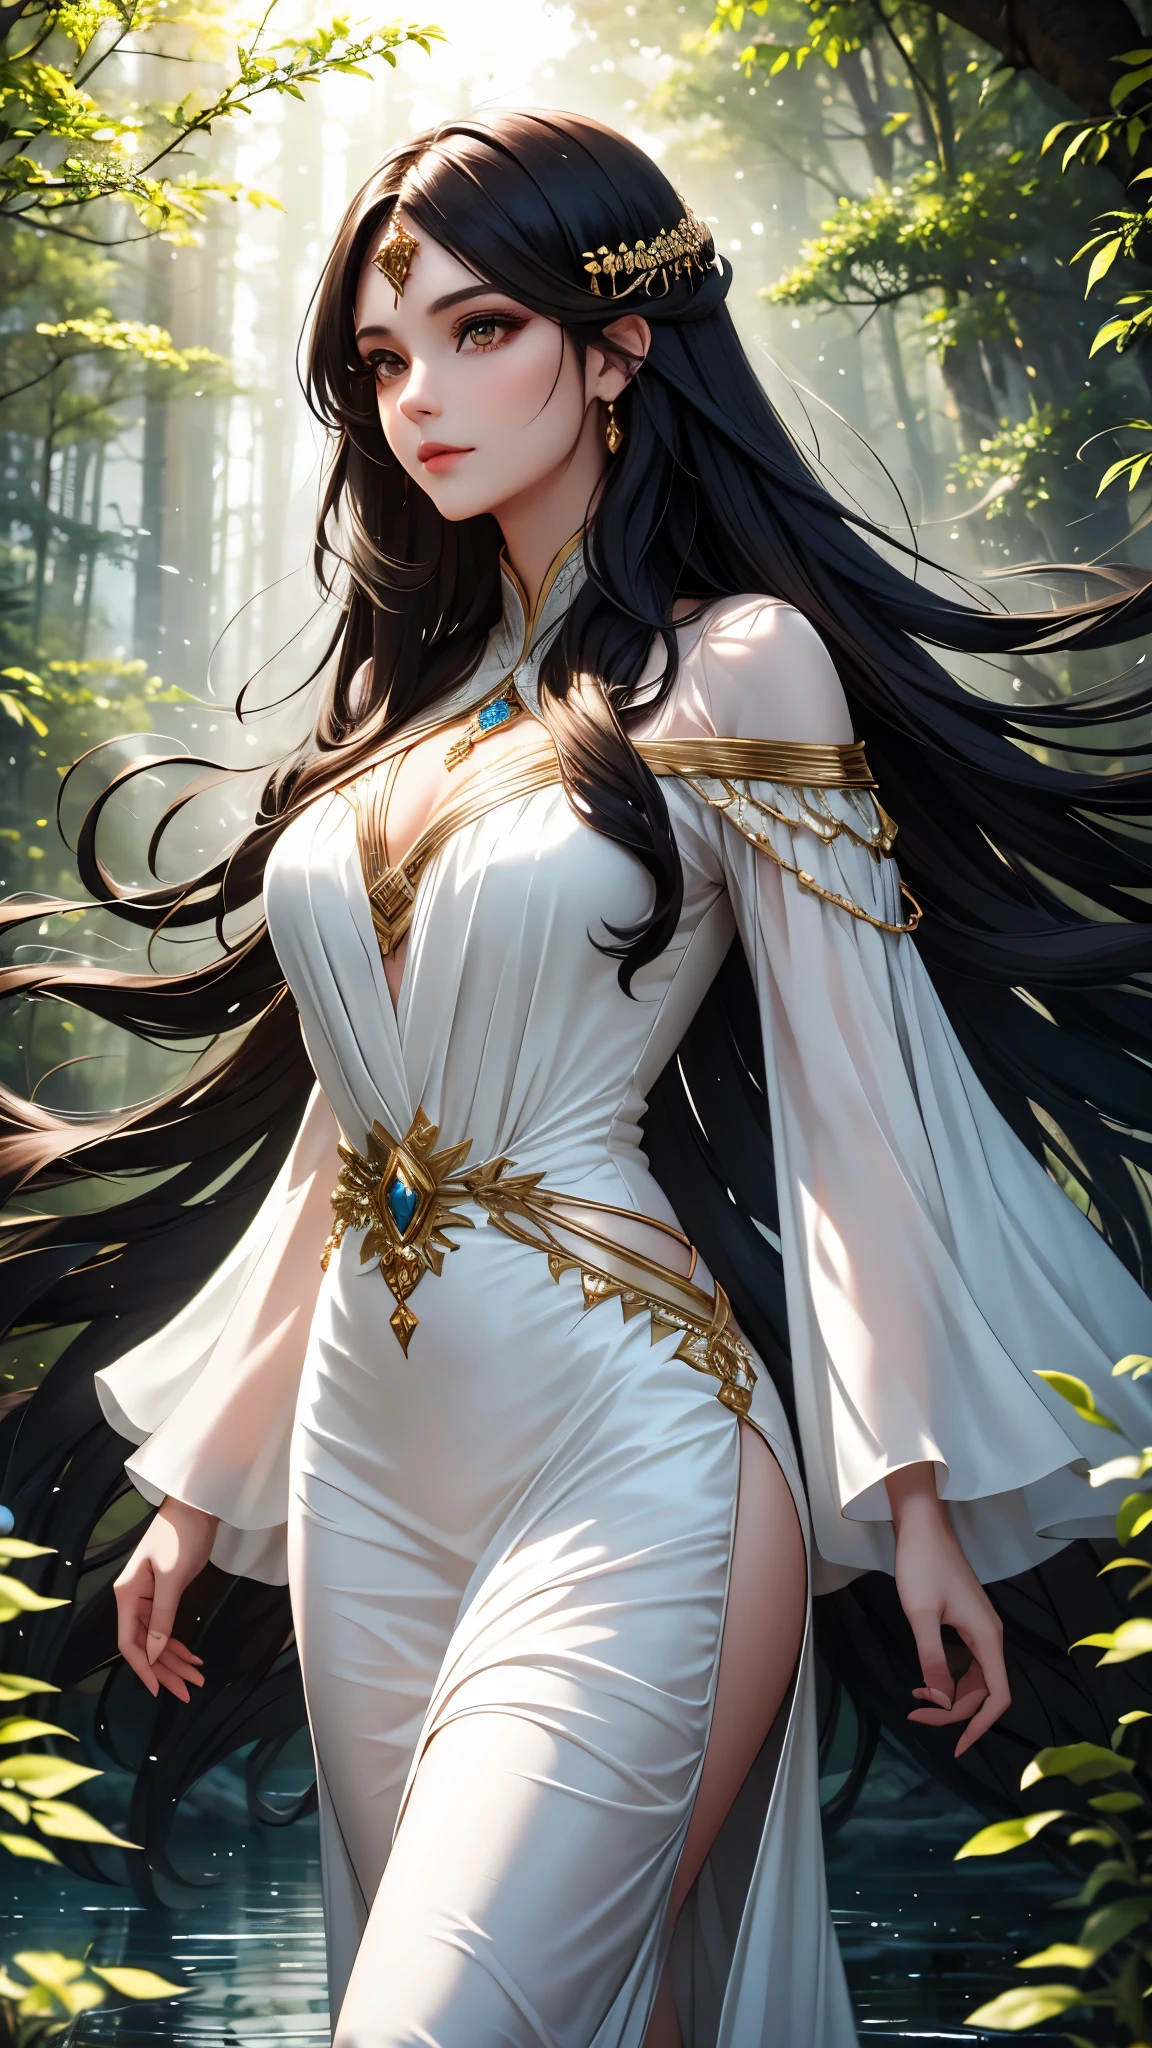 神奇的女人，棕色的眼睛，長長的黑髮，穿著白色的裙子，在夜間森林裡，有光水元素球體最高品質的藝術品 8k 